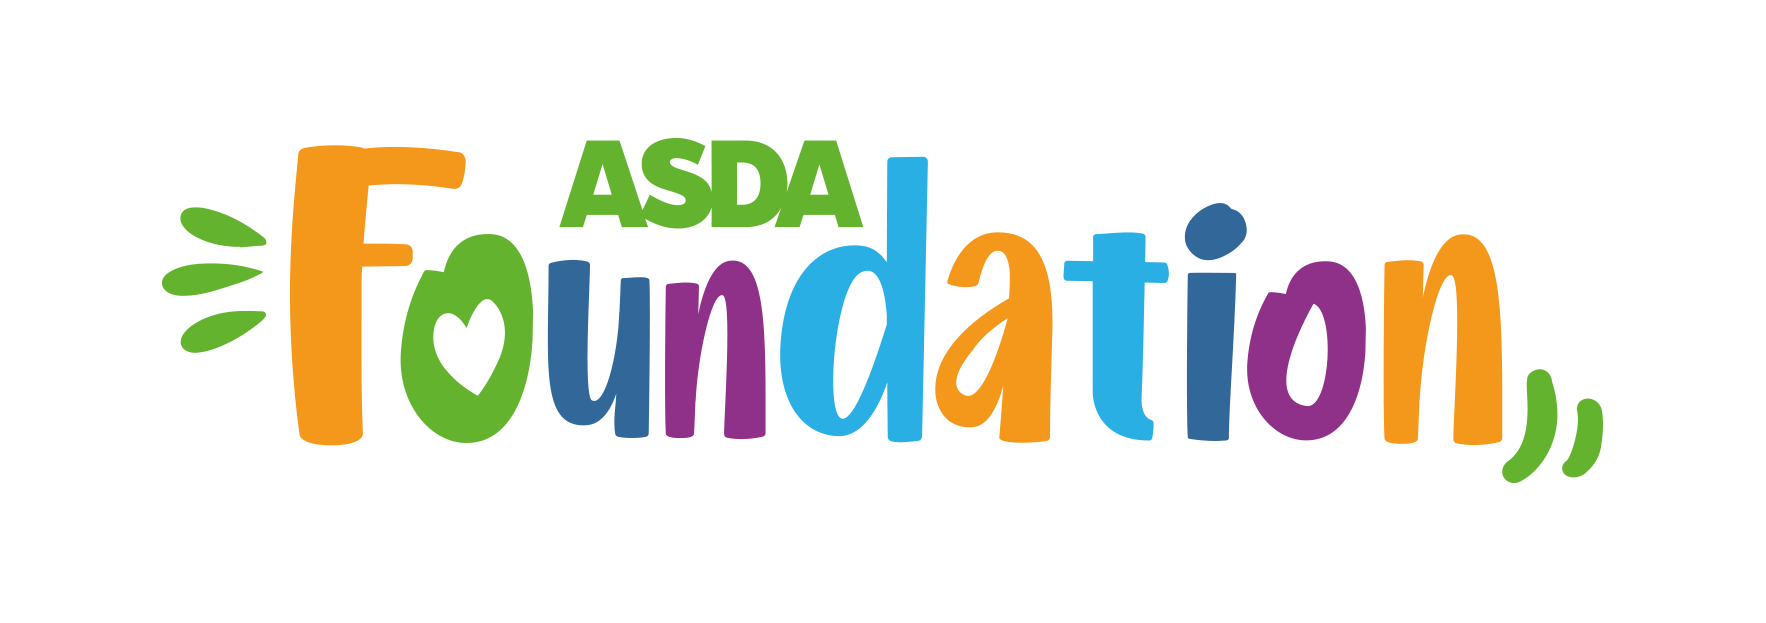 Asda_Foundation_Logo